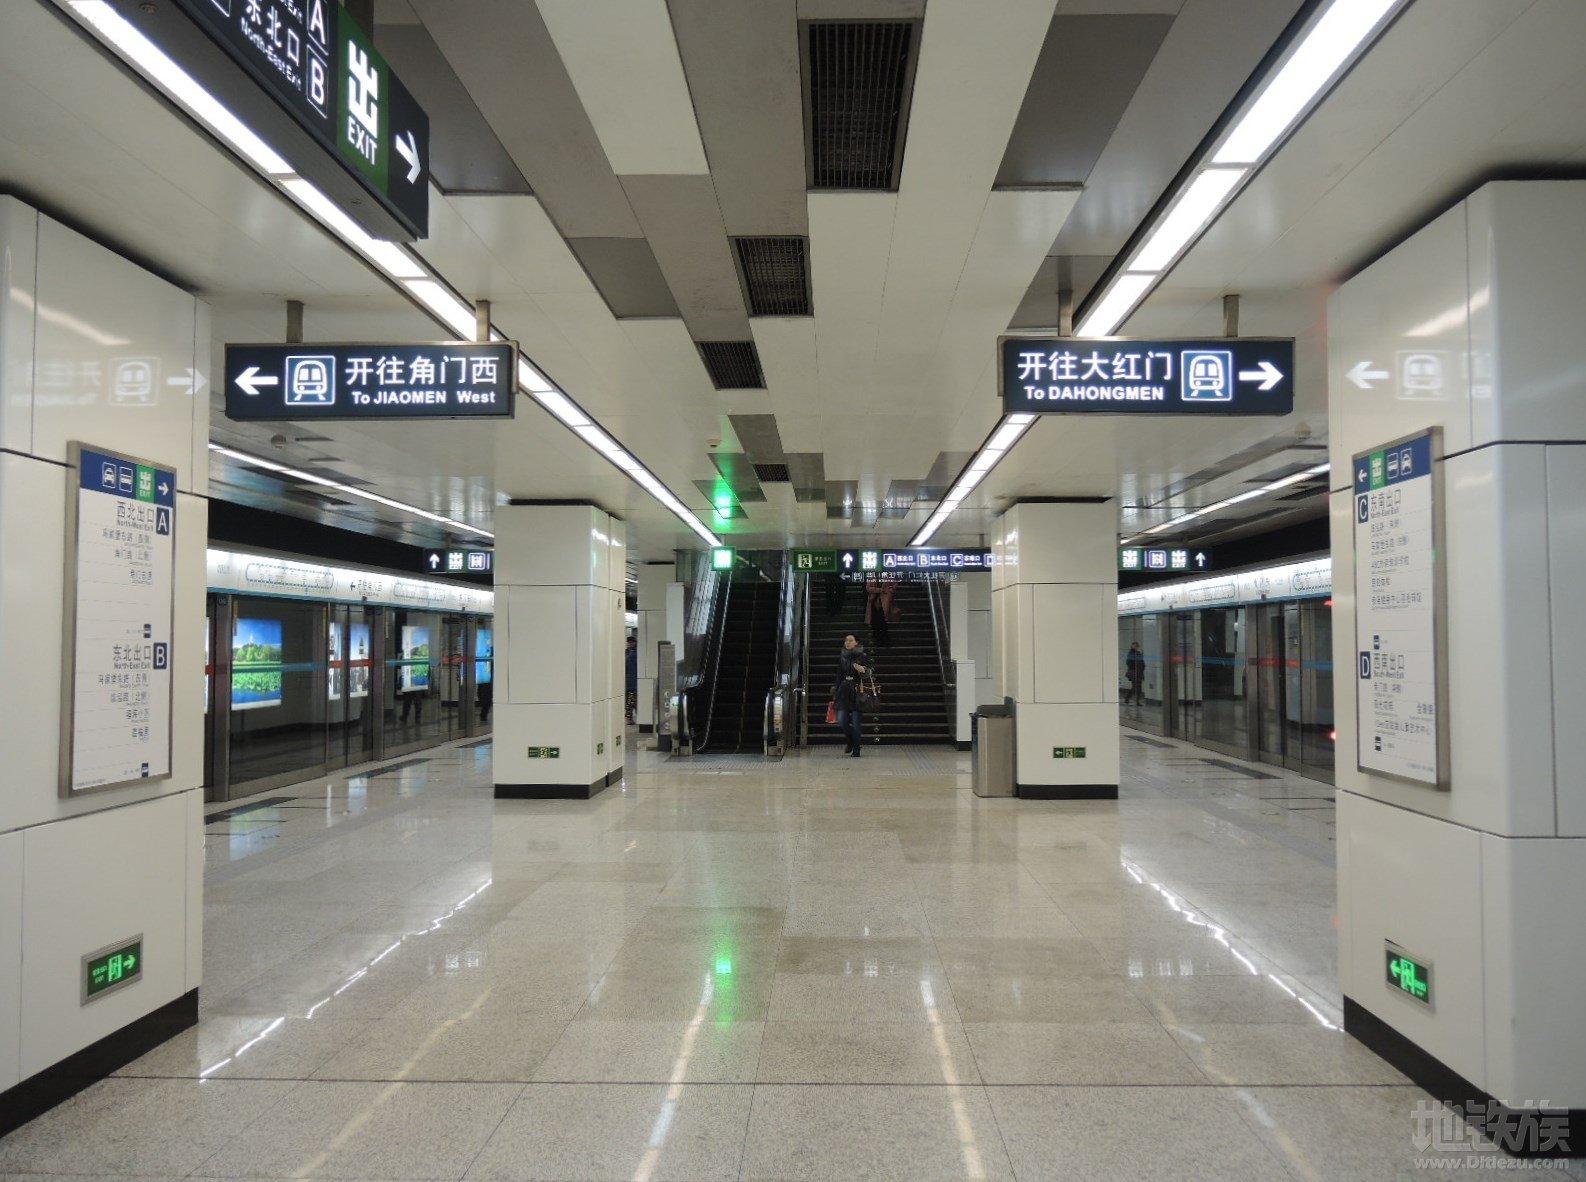 角门西站 本站为地下三层岛式车站,可与4号线换乘,共设有7个出入口